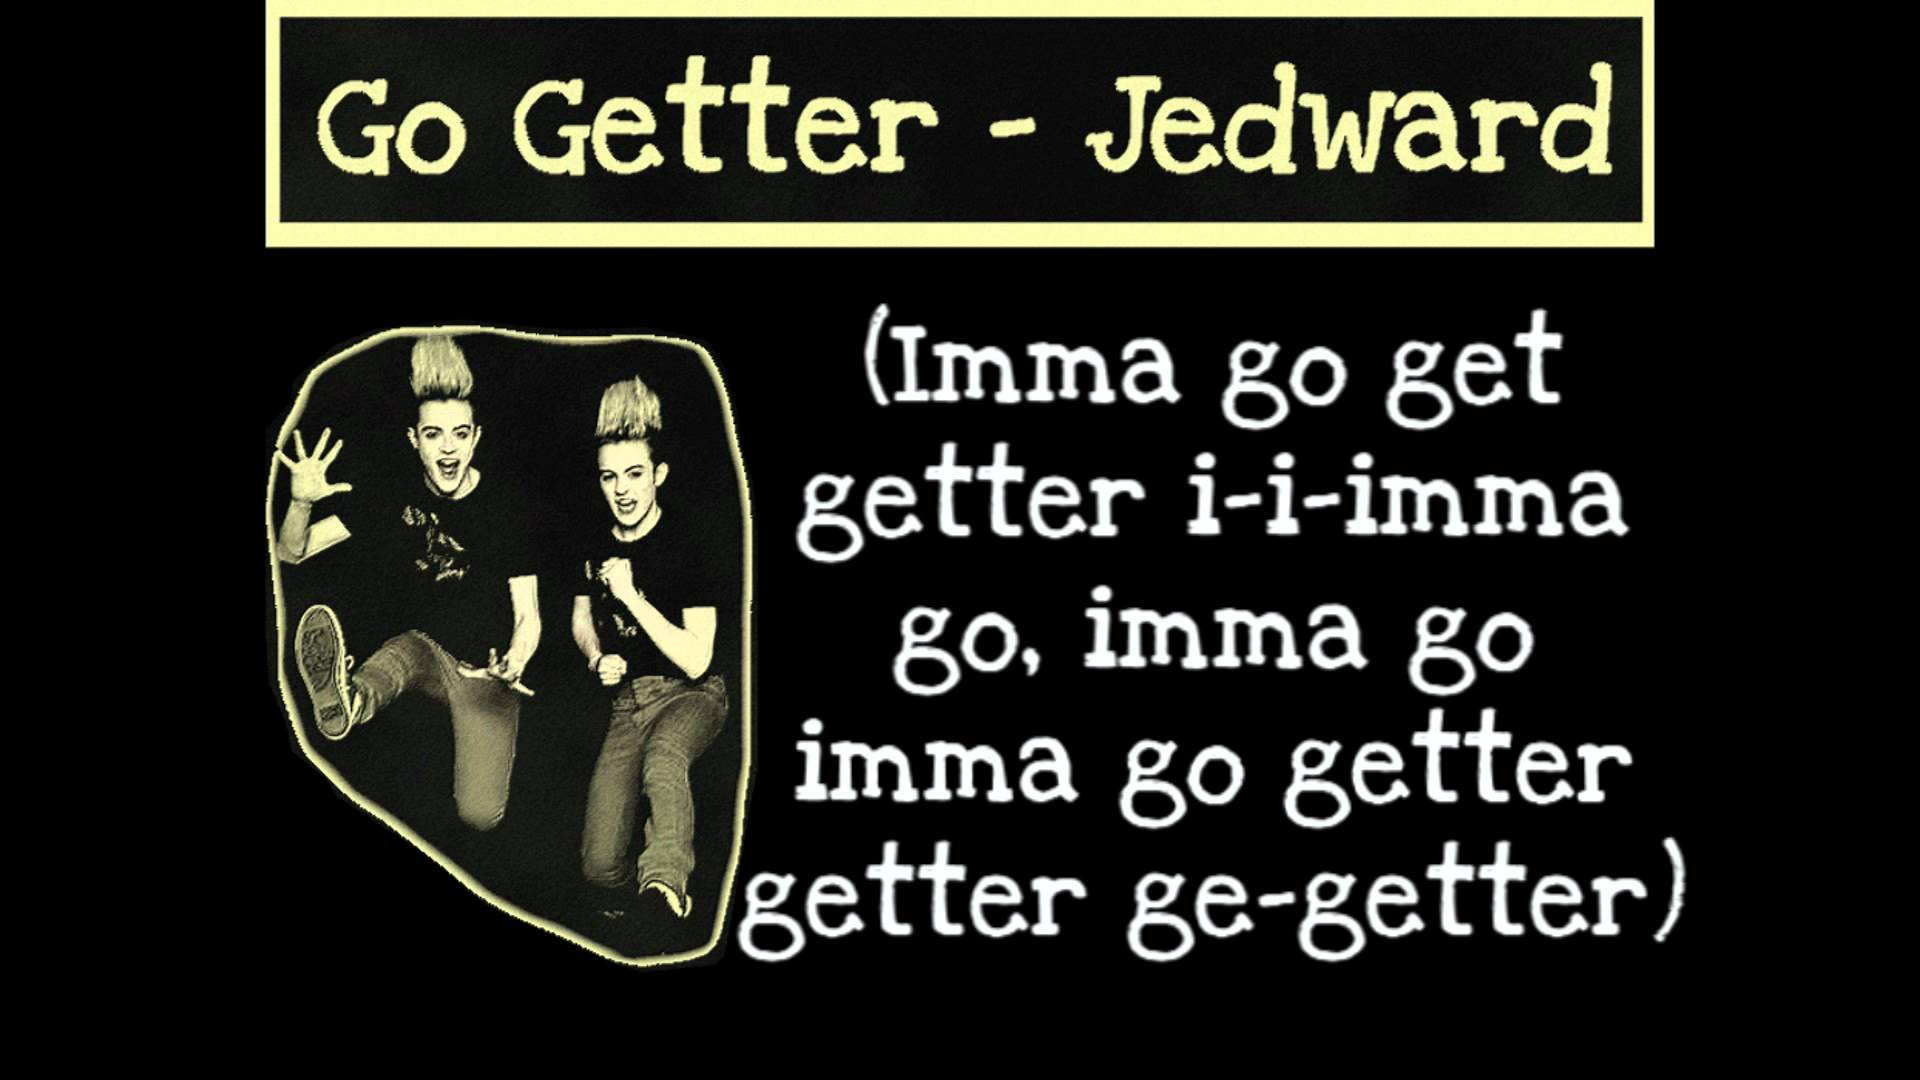 Jedward - Go Getter